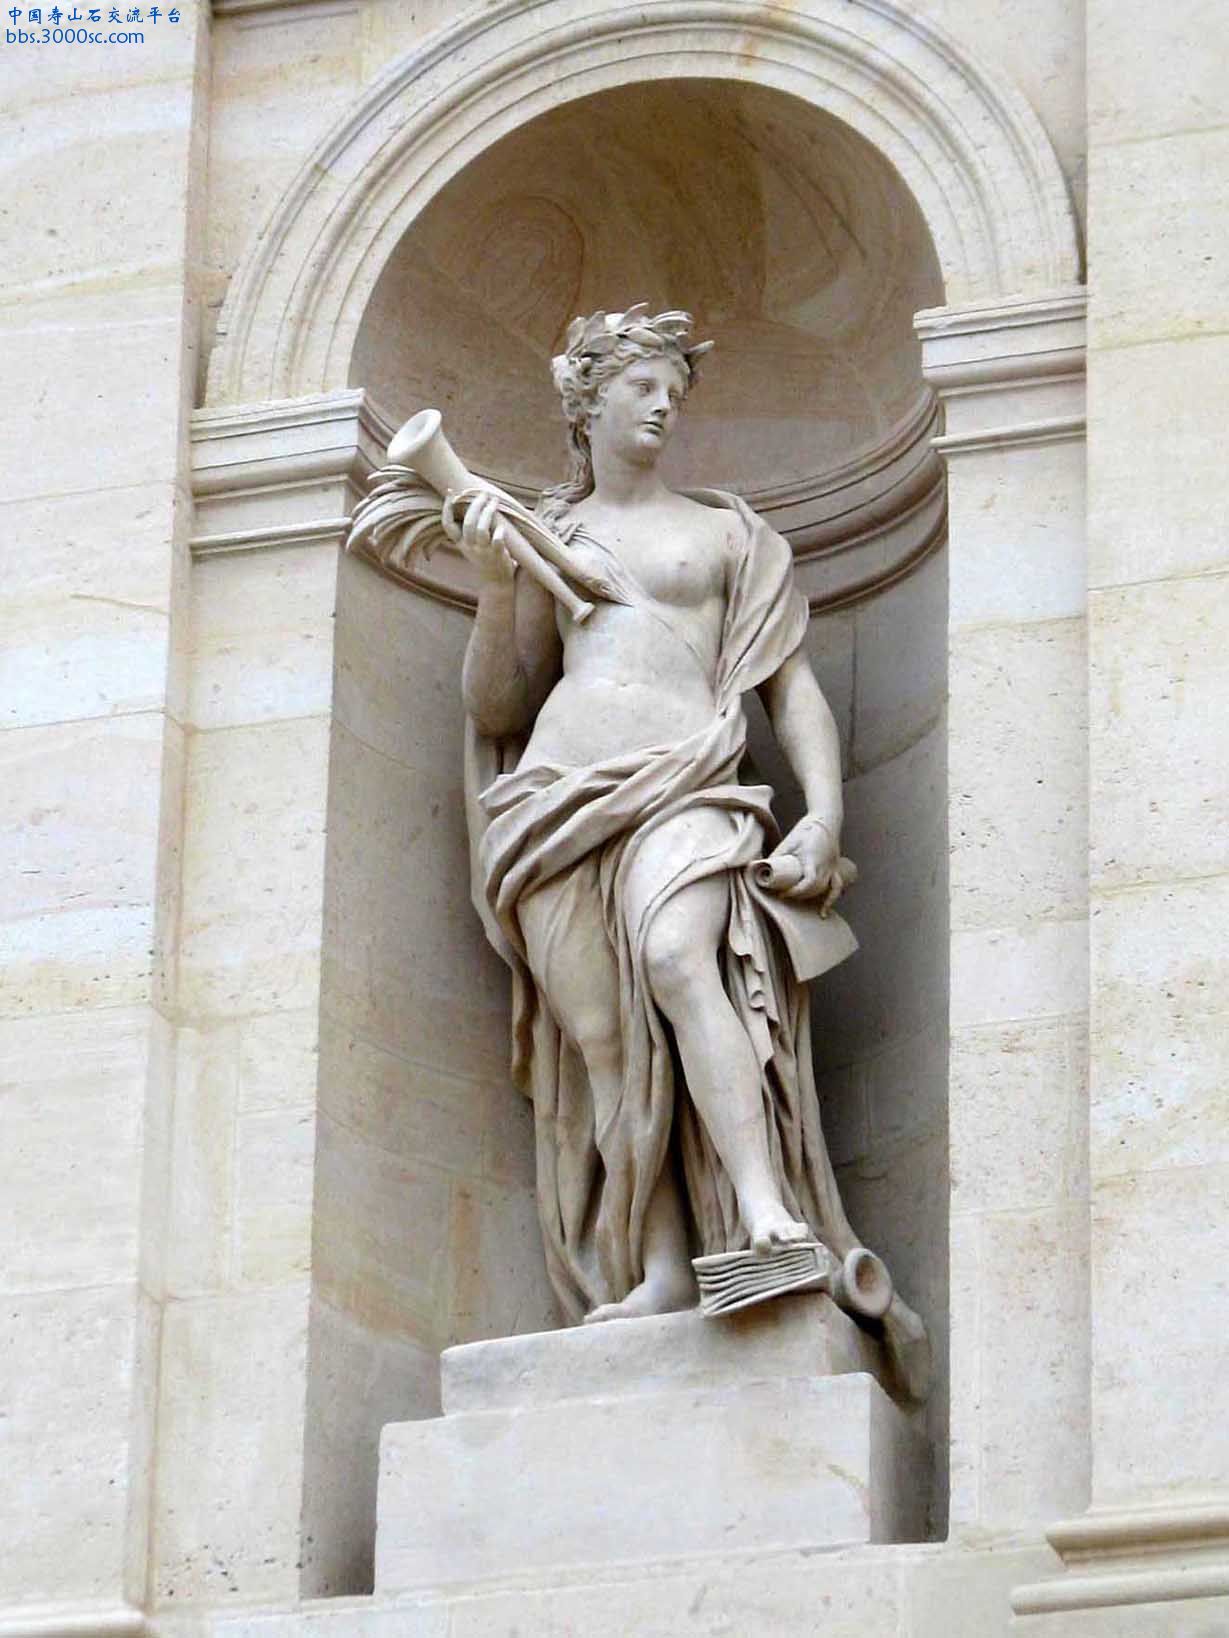 法國梵爾賽宮建築物石像-B04.jpg